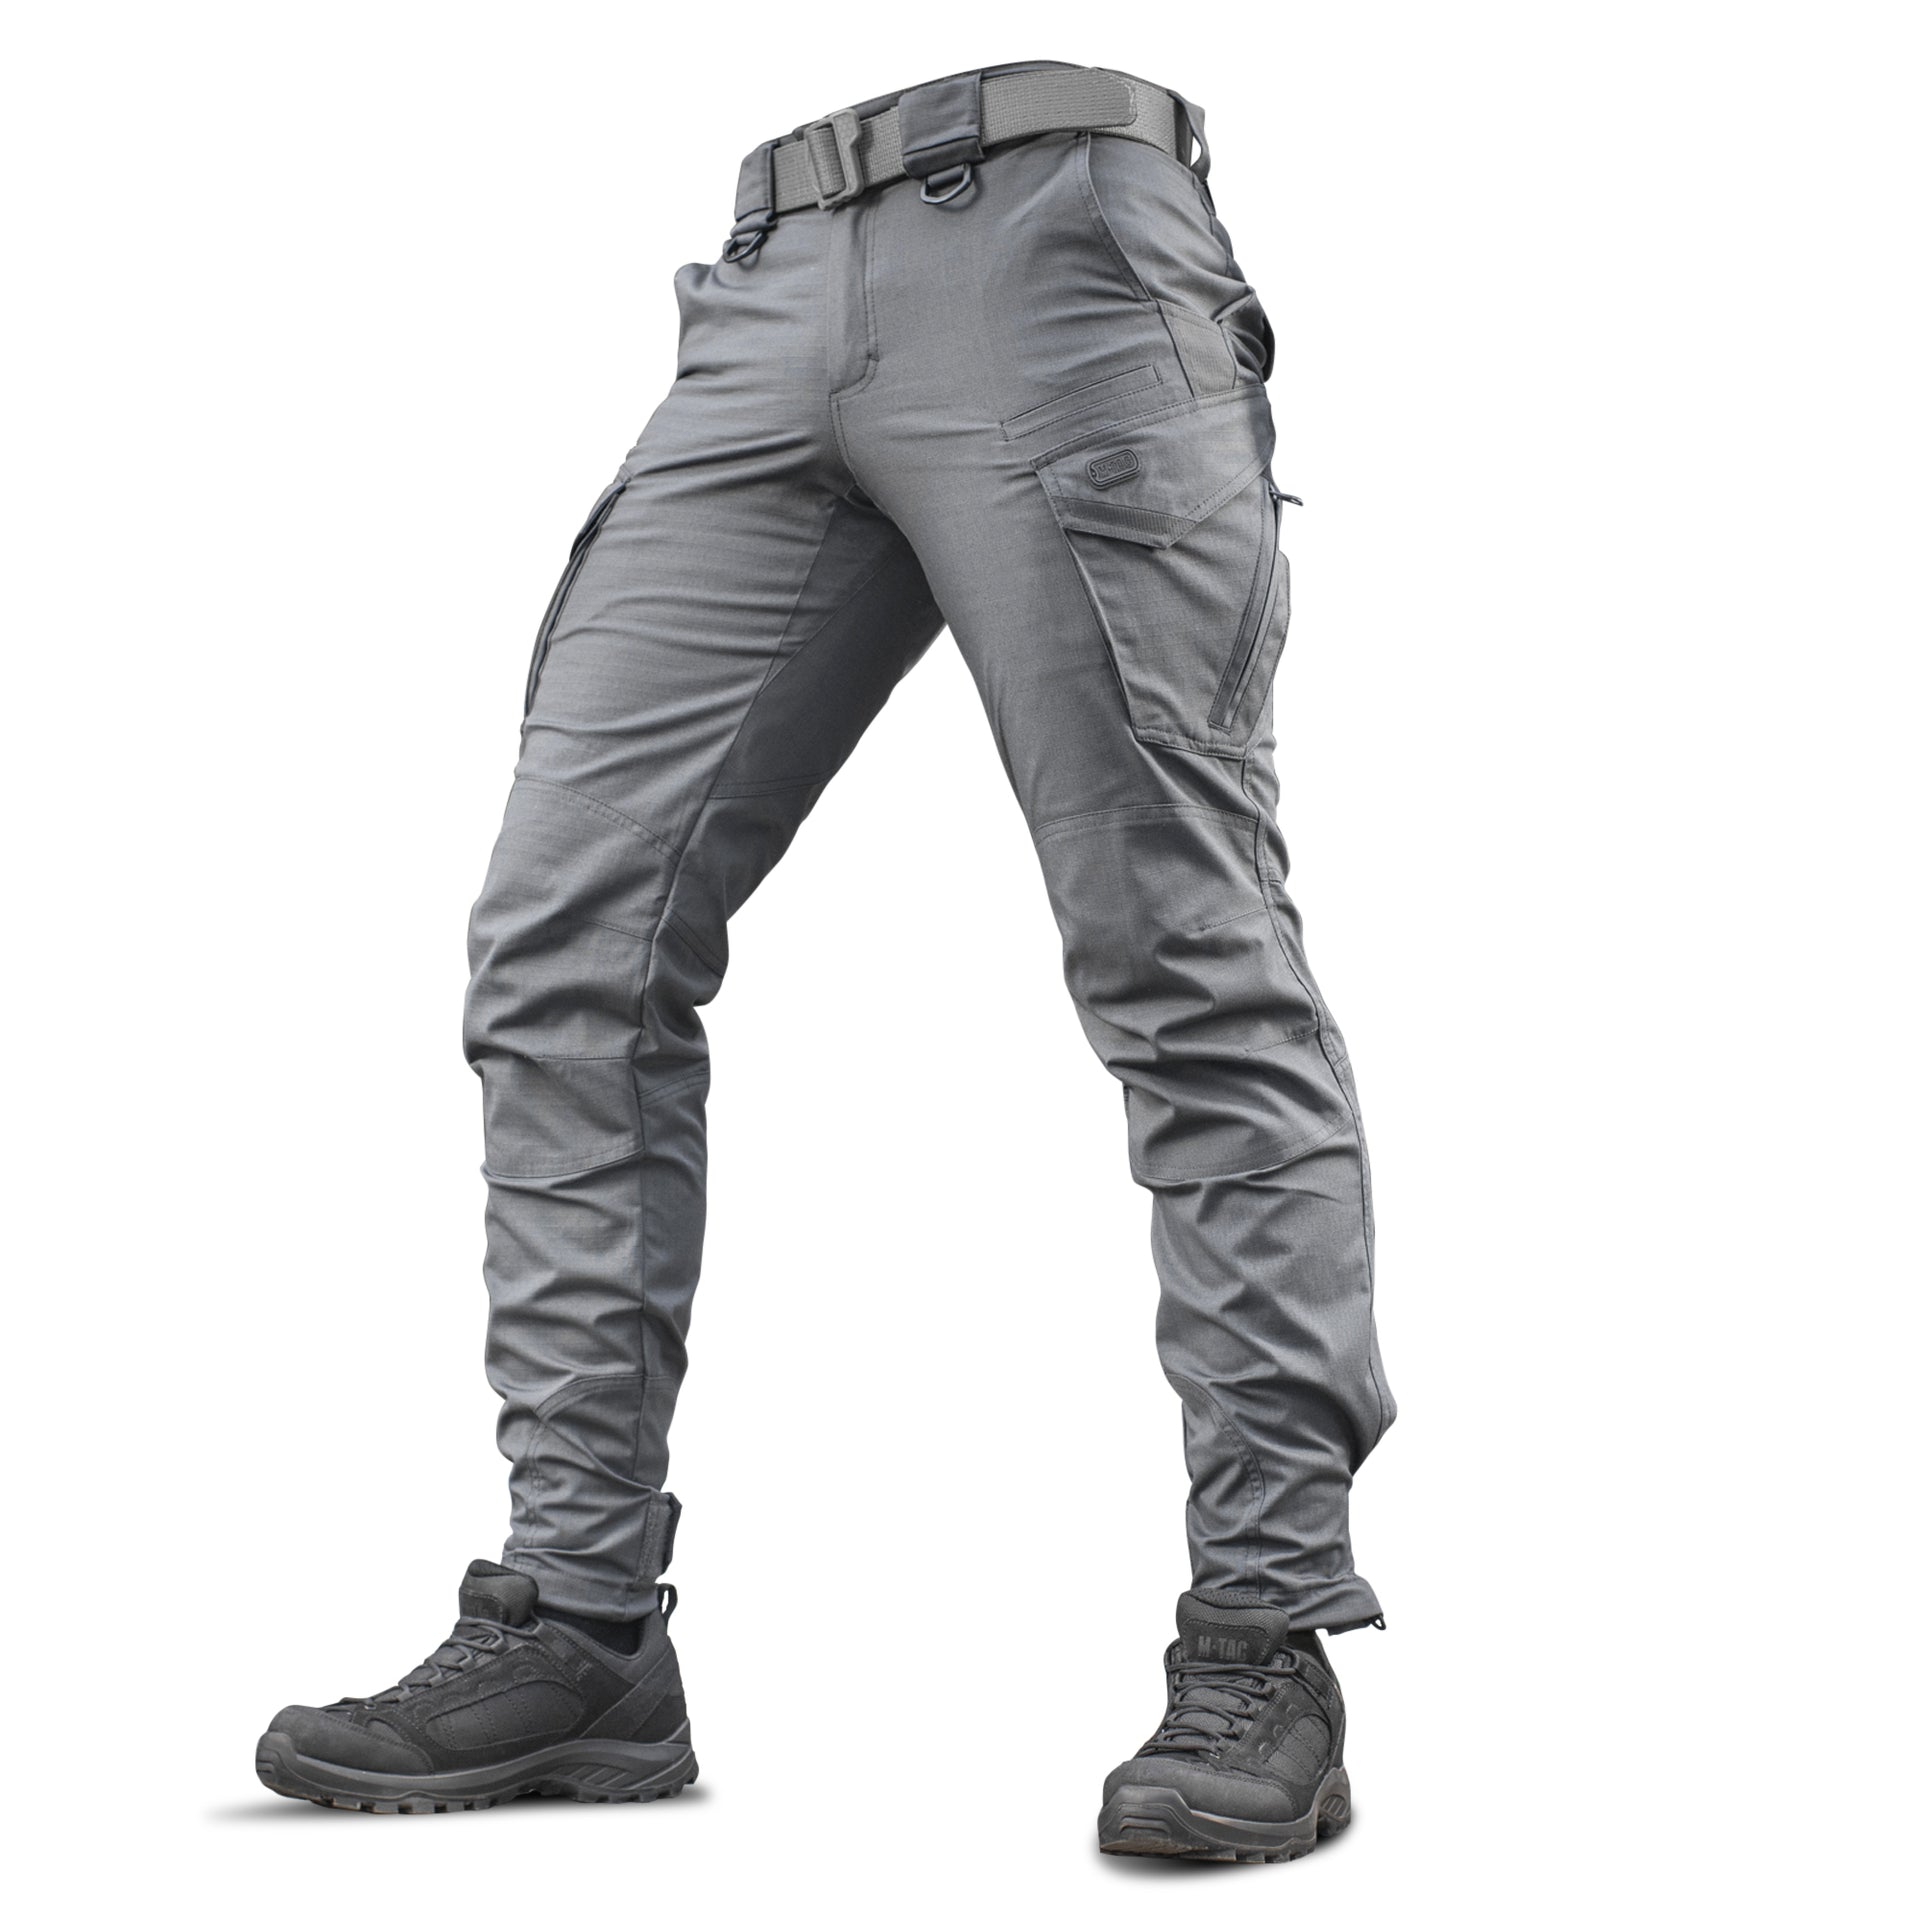 M-Tac Aggressor Flex - Tactical Pants - Men Cotton Cargo Pockets